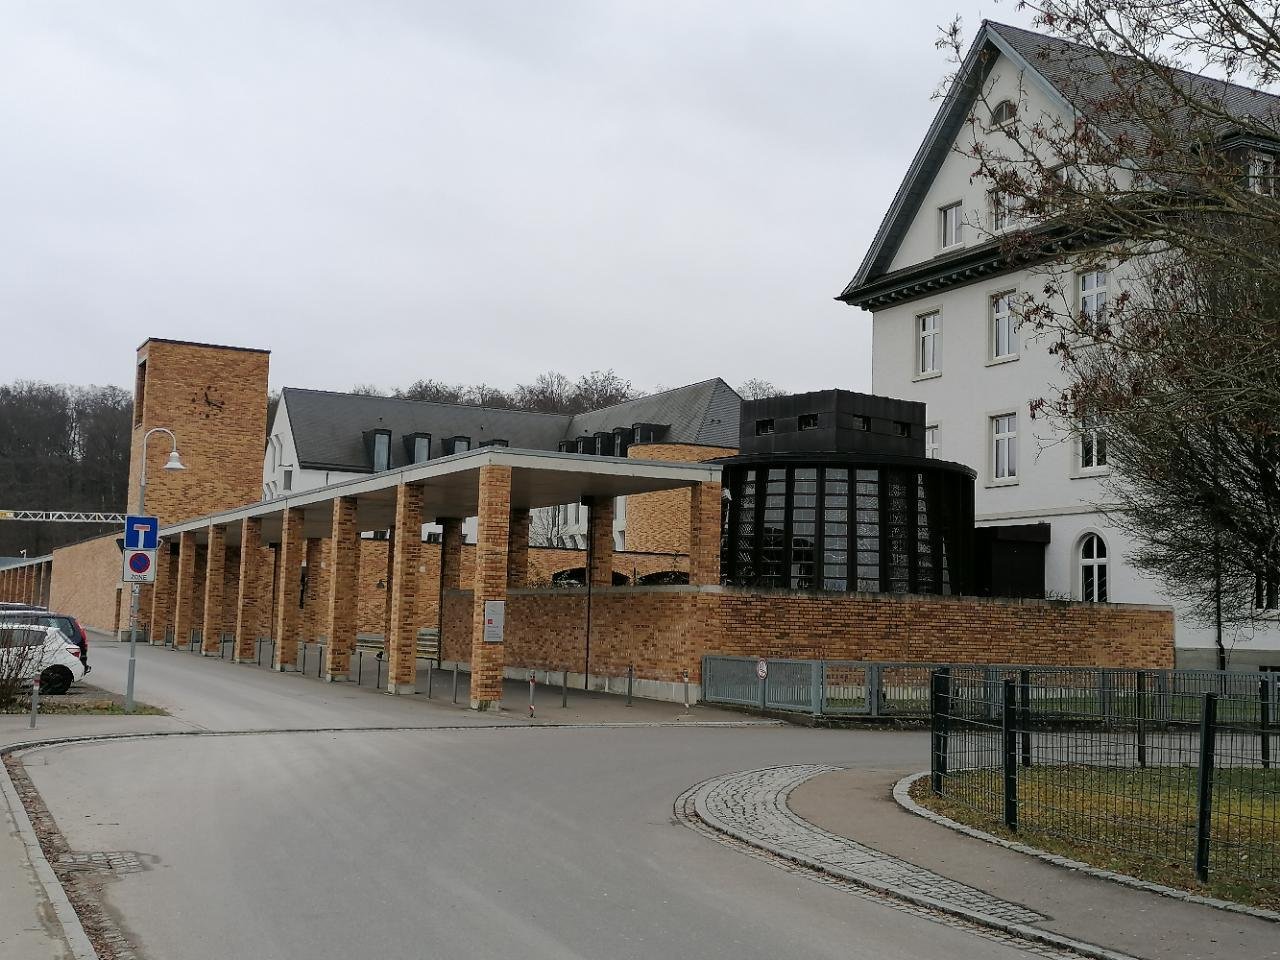 Schule in Landauf, LandApp BW App spotted by Harry Schneckenburger on 05.01.2021